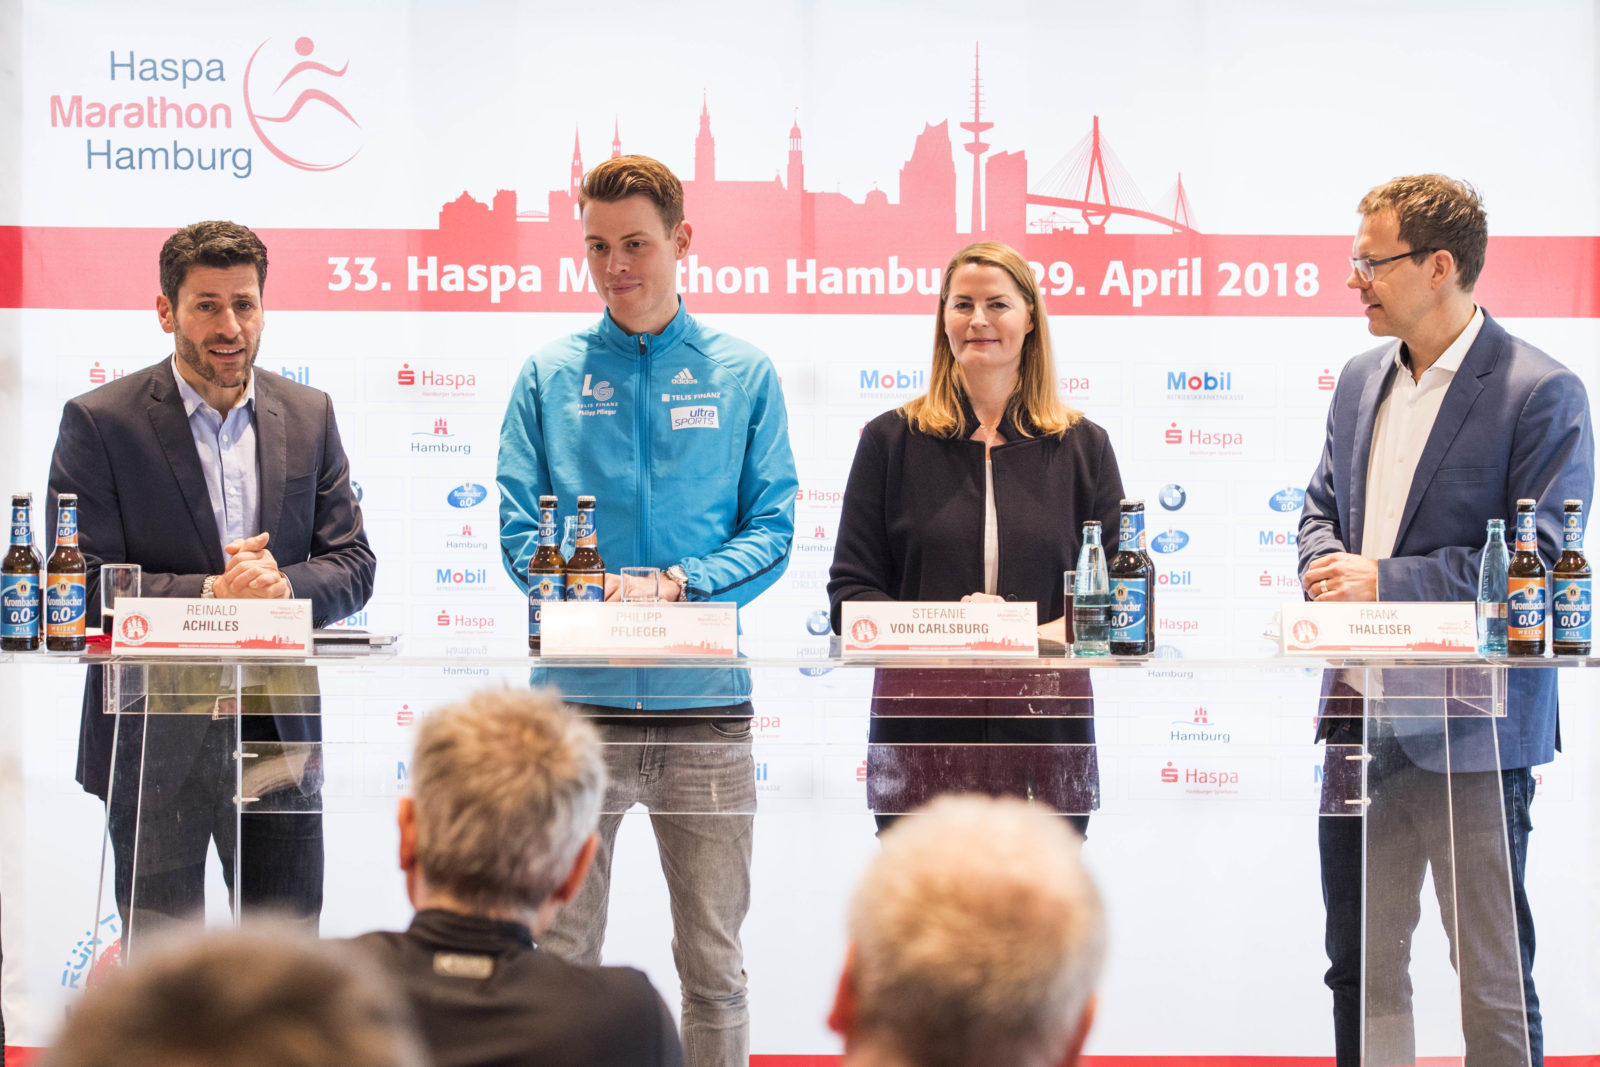 Marathon: Pressekonferenz Hamburg Marathon 2018